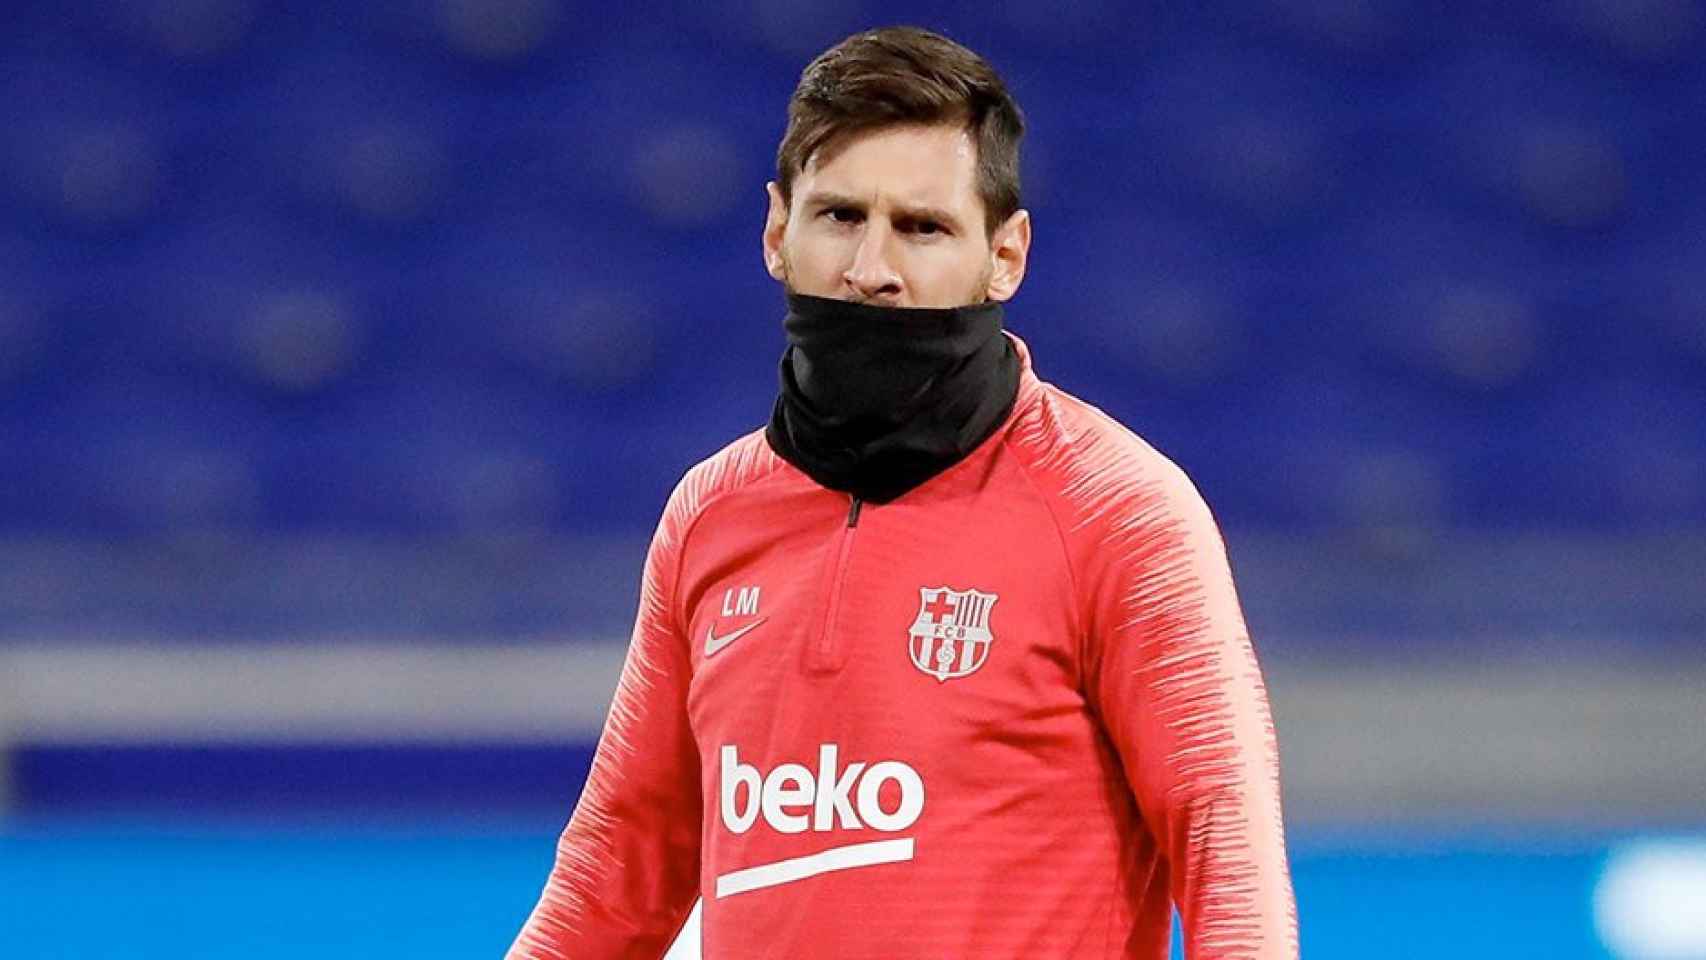 El delantero argentino del FC Barcelona Leo Messi participa en una sesión de entrenamiento